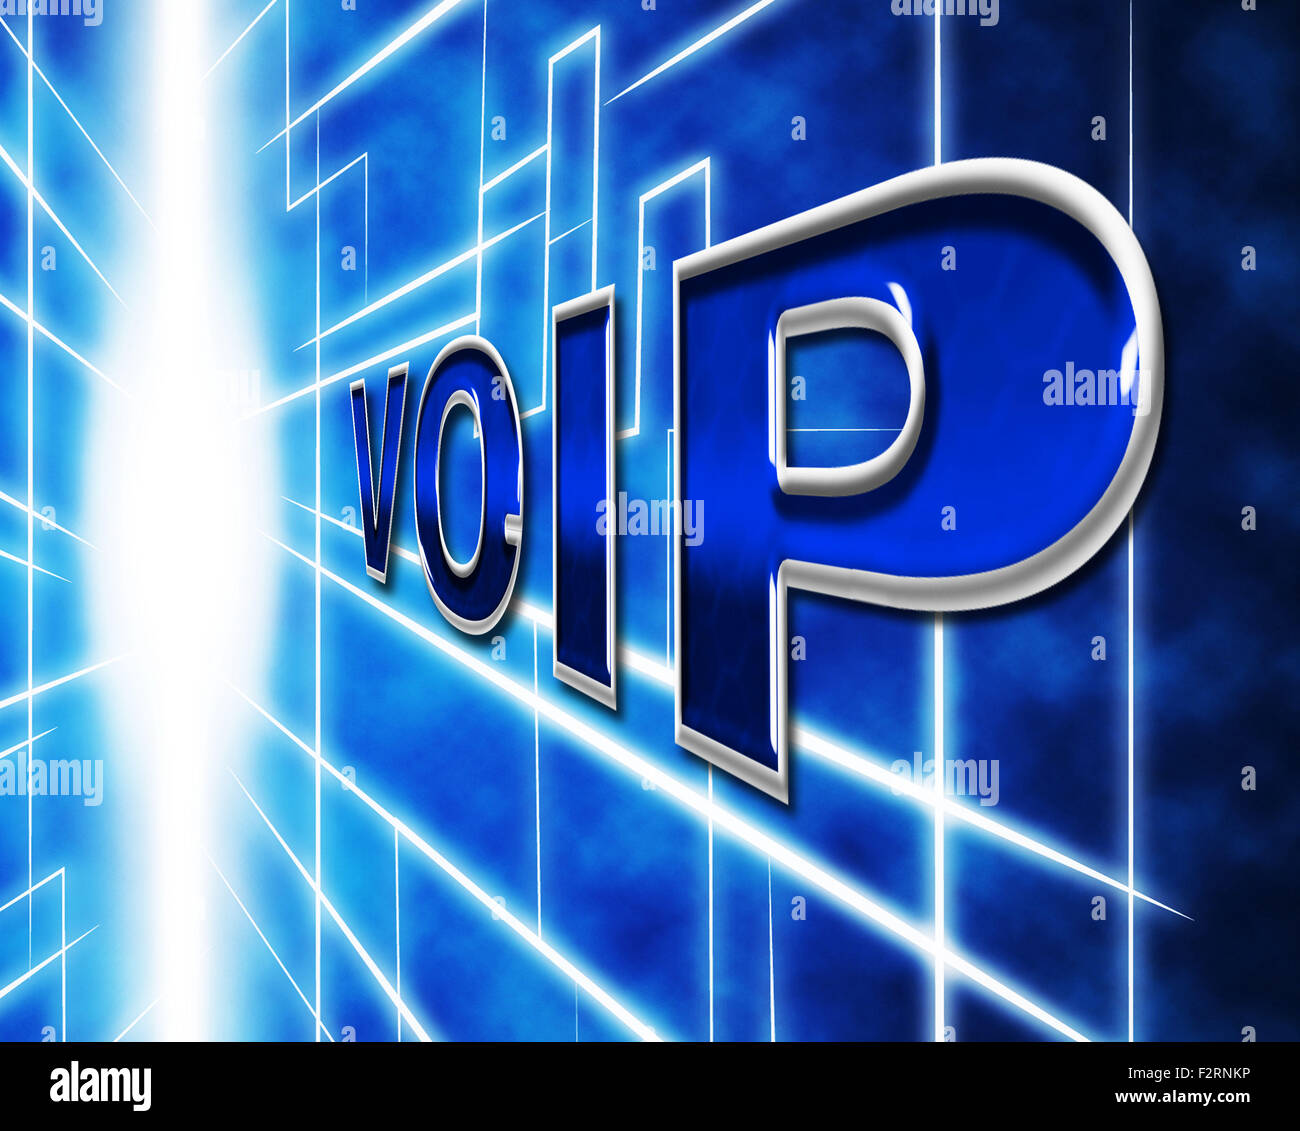 Telefonie Voip Voice über Breitband und Kommunikation ausmachen Stockfoto